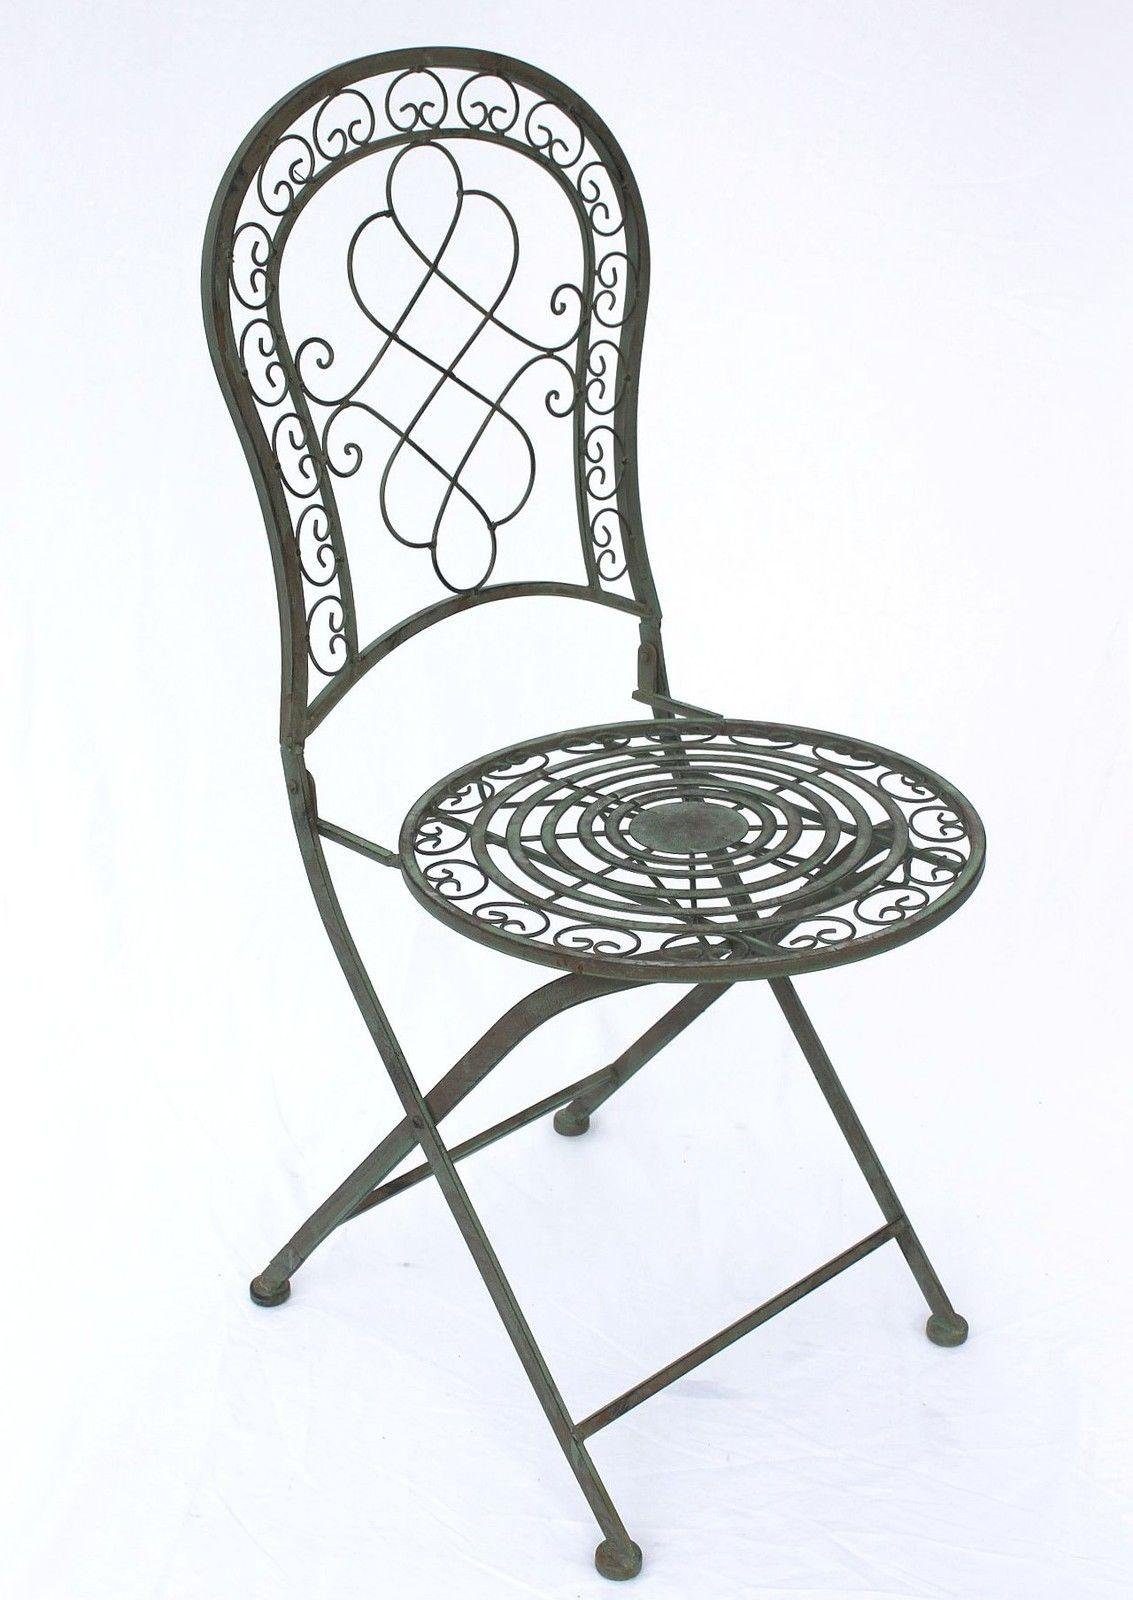 12185 Garten Malega Vintage Nostalgie Eisenstuhl Metallstuhl Stuhl Metall Gartenstuhl Antik Patina Eisen DanDiBo